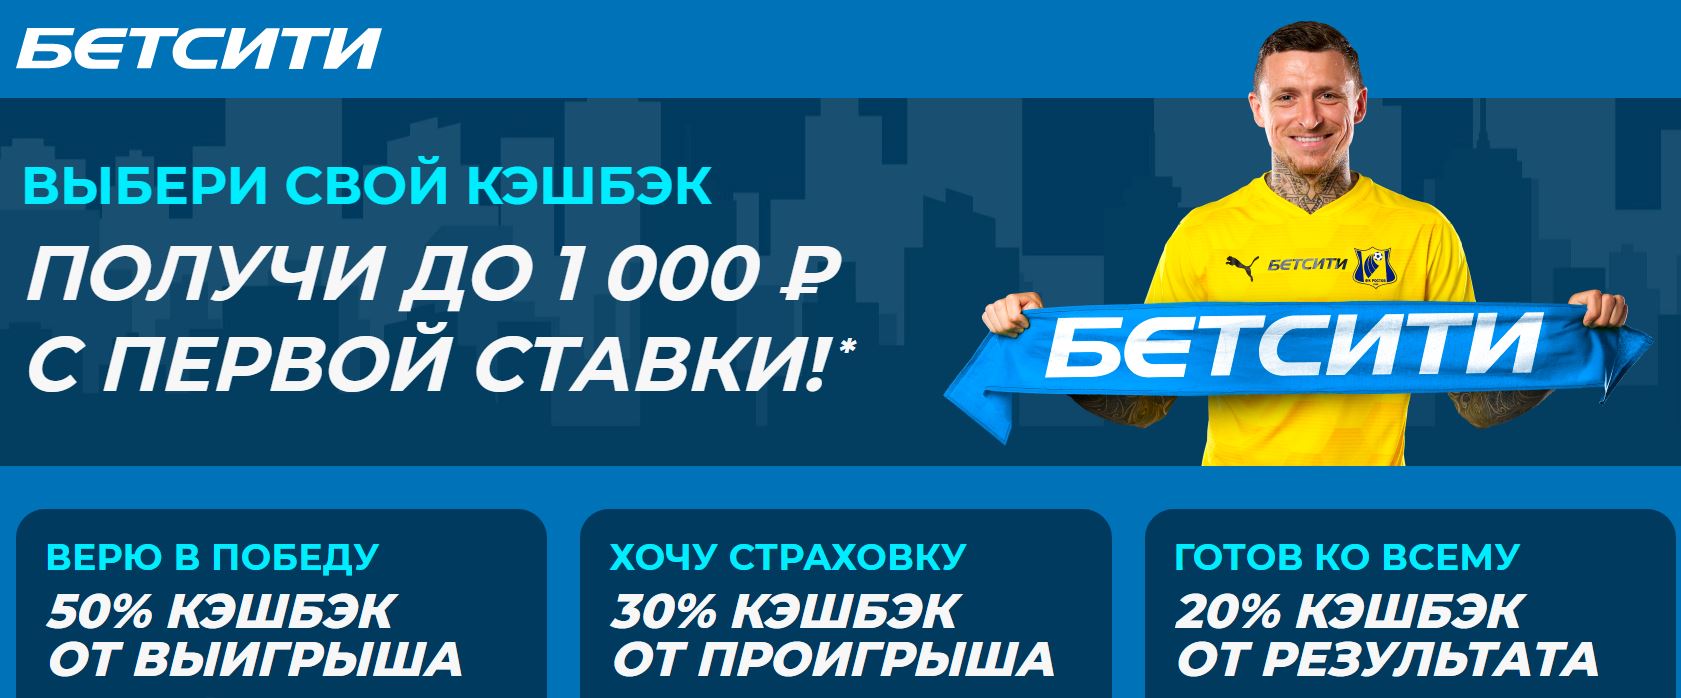 Акция от БК Бетсити: Выбери свой кэшбэк - получи до 1000 рублей с первой ставки